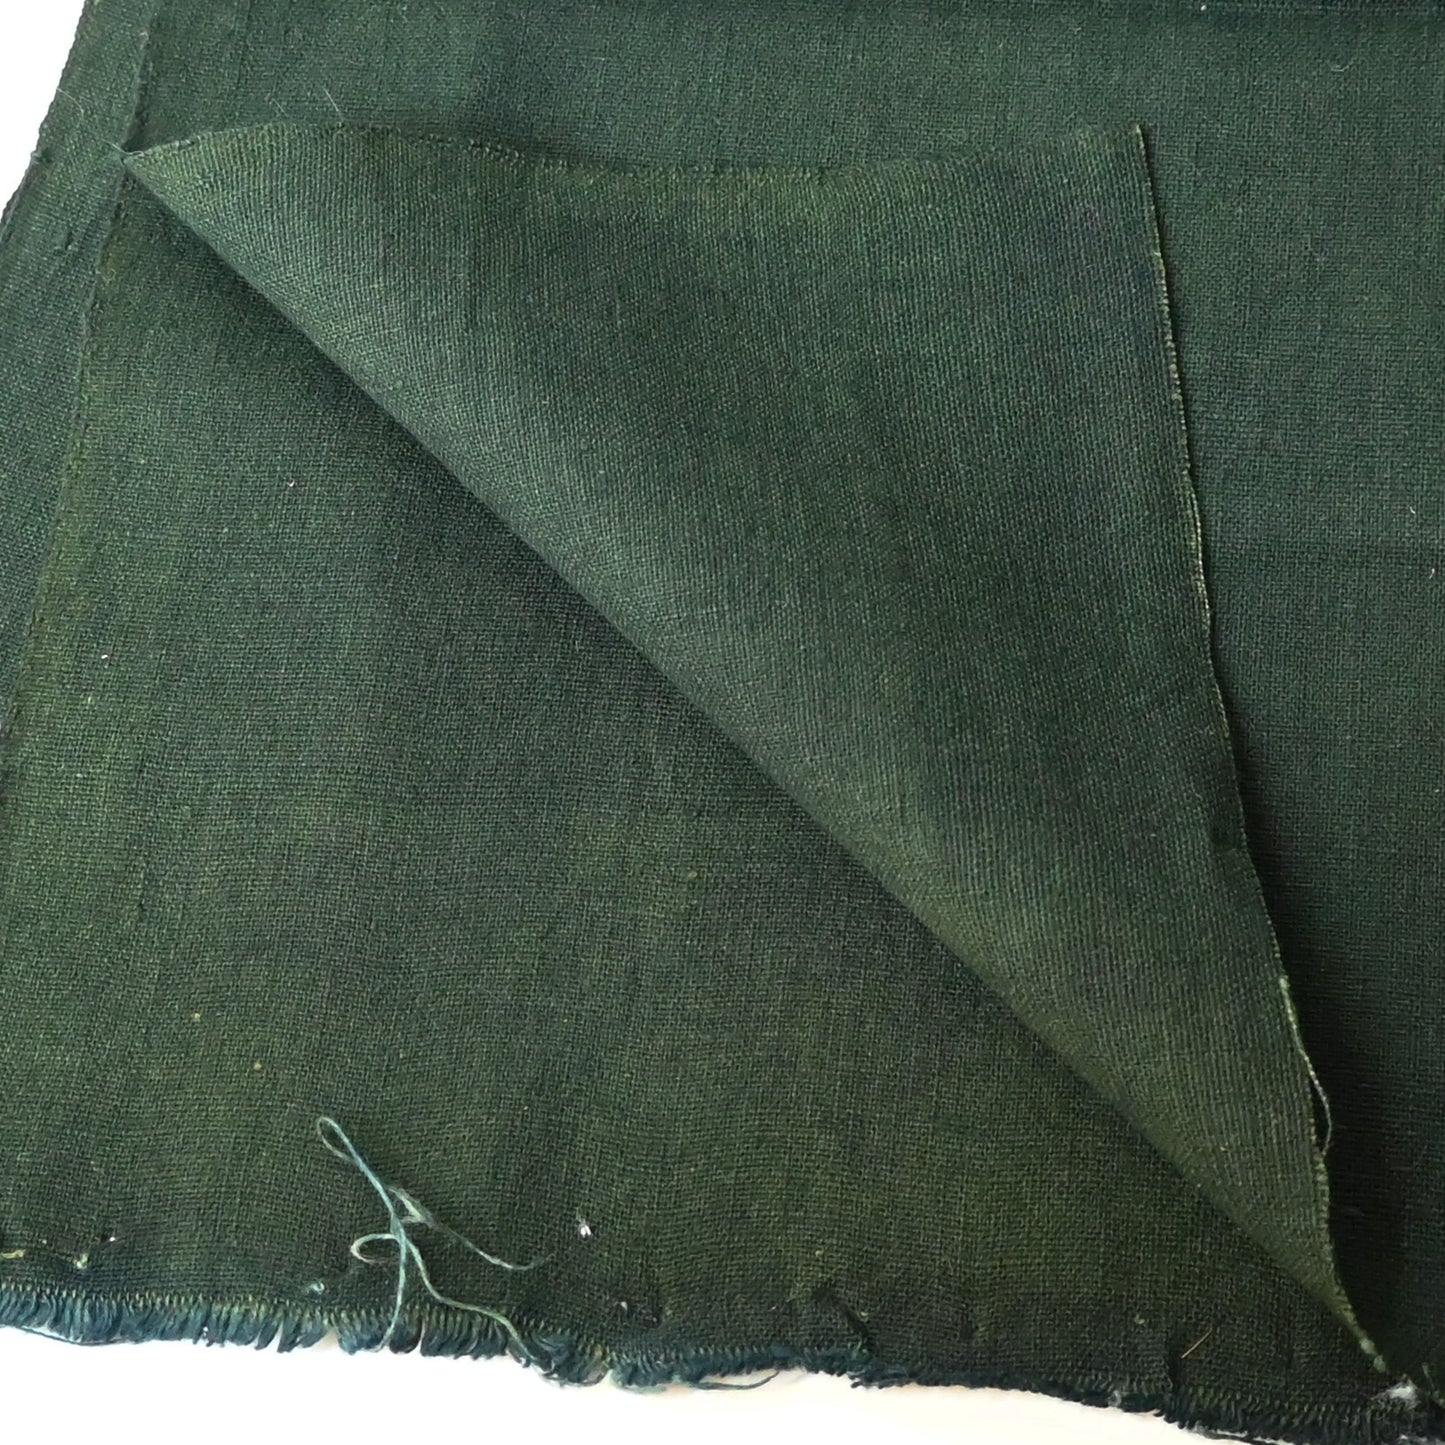 Vintage Plain Indigo Green Cotton